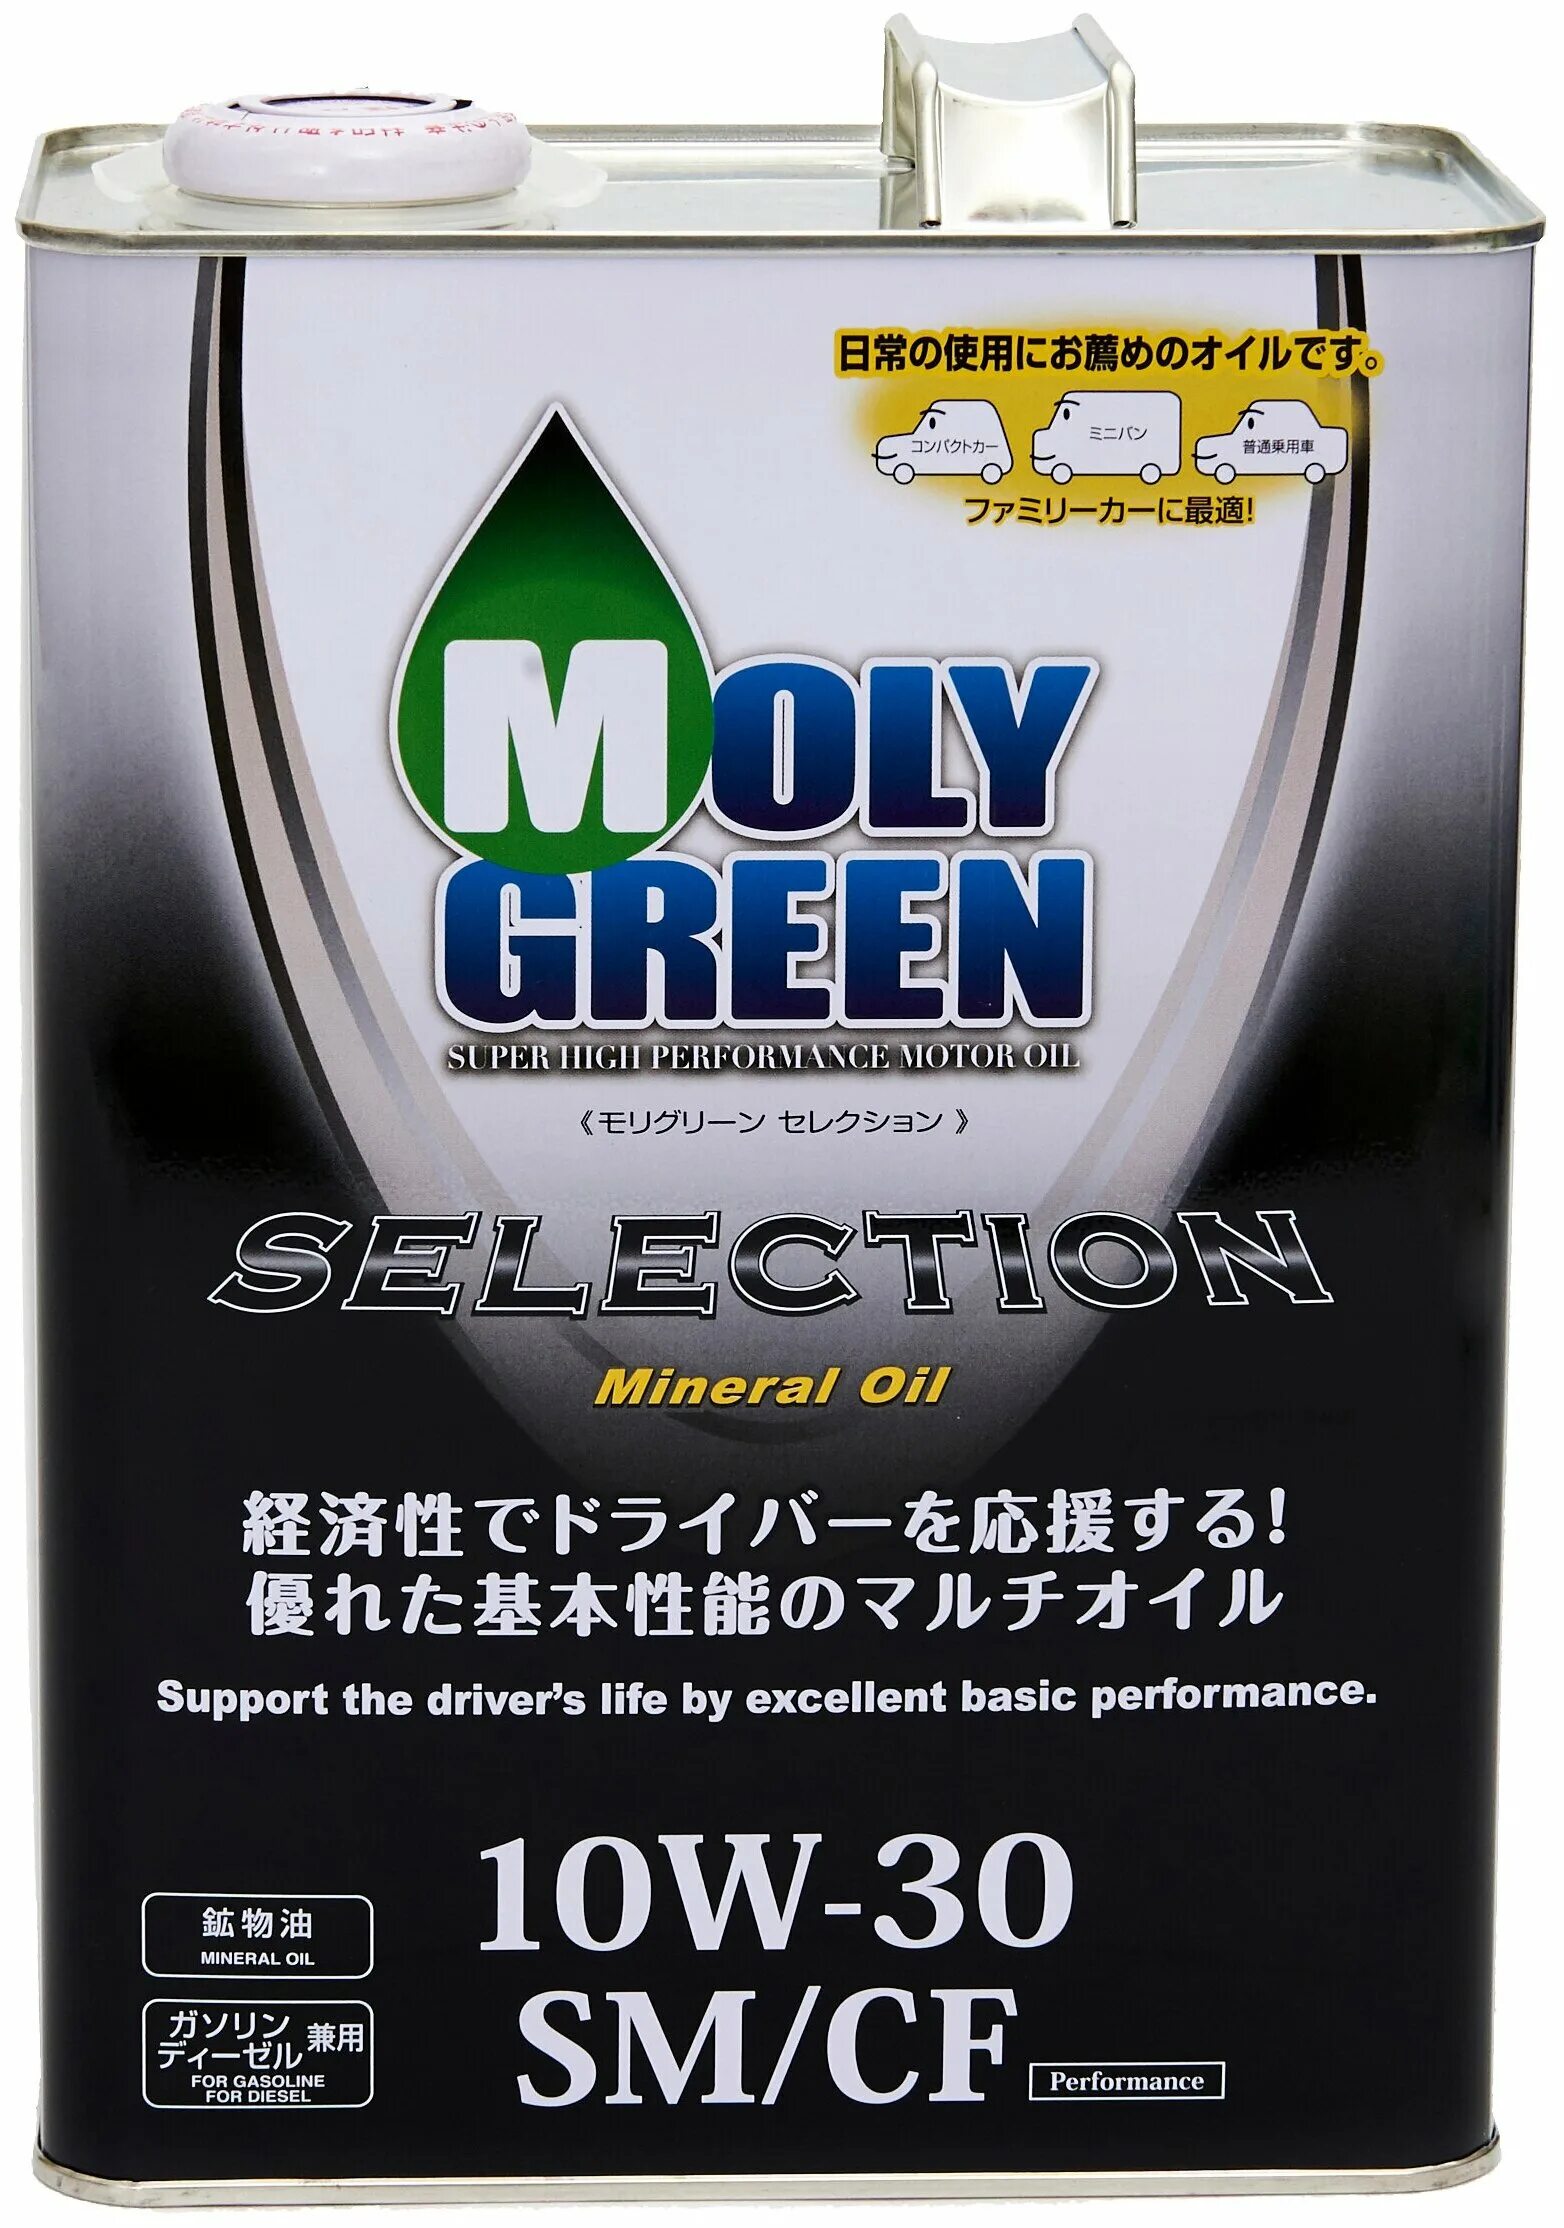 Моторное масло sm cf. Масло моли Грин w30. Моторное масло Moly Green selection 10w40. Моторное масло Moly Green selection 10w40 SN/CF. Moly Green 10w 40 для мотоциклов.